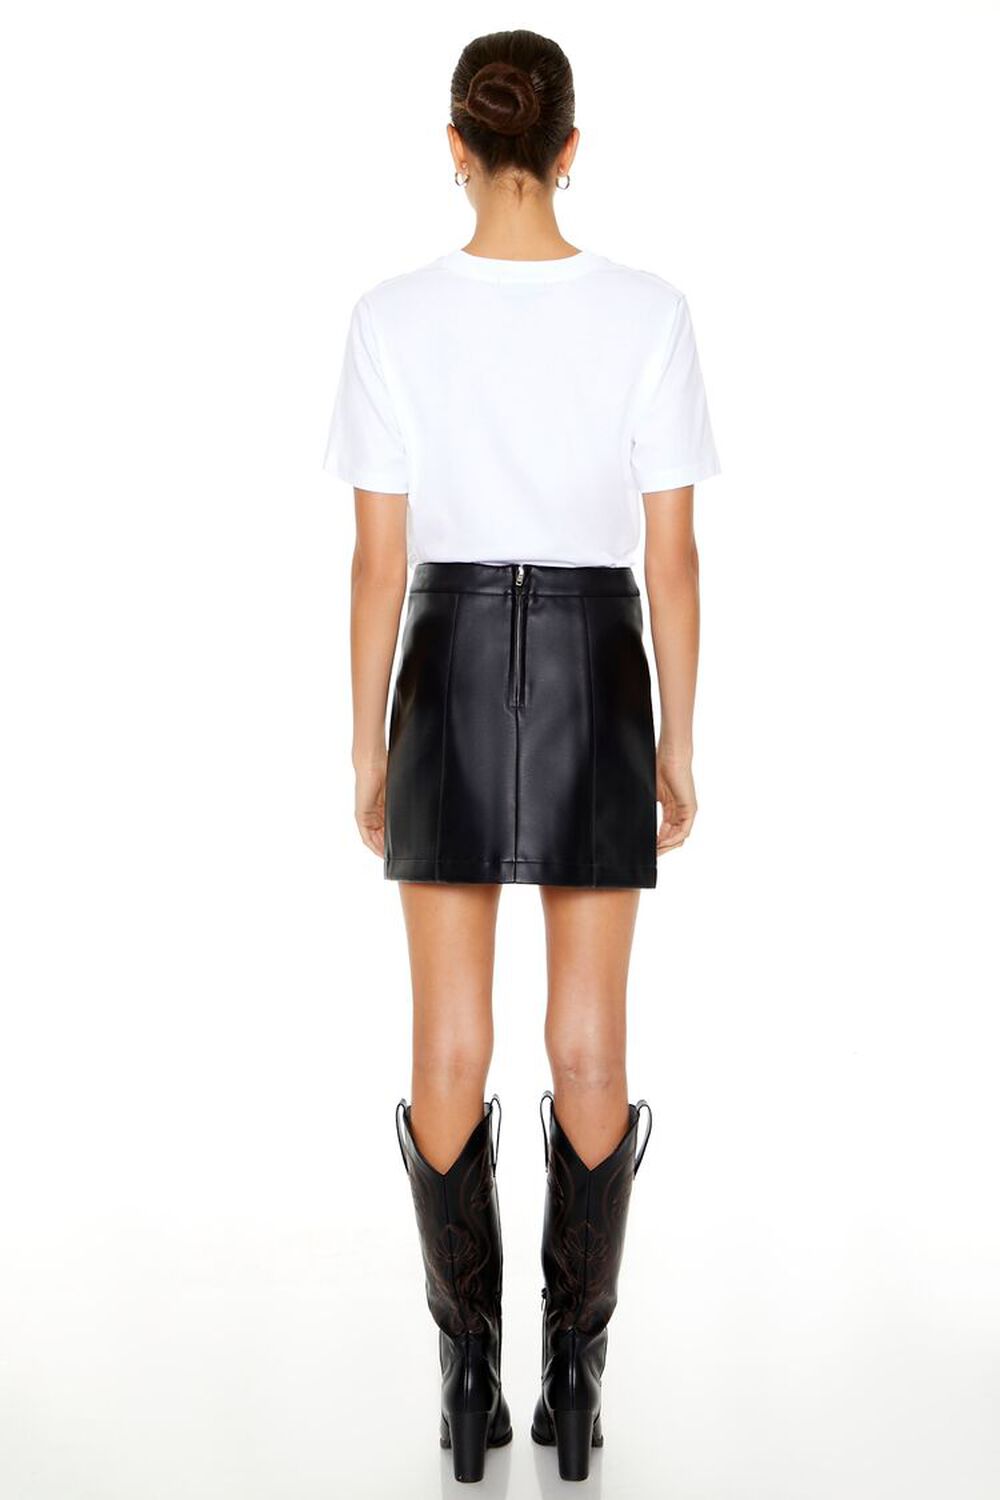 JET BLACK Faux Leather High-Rise Mini Skirt, image 3